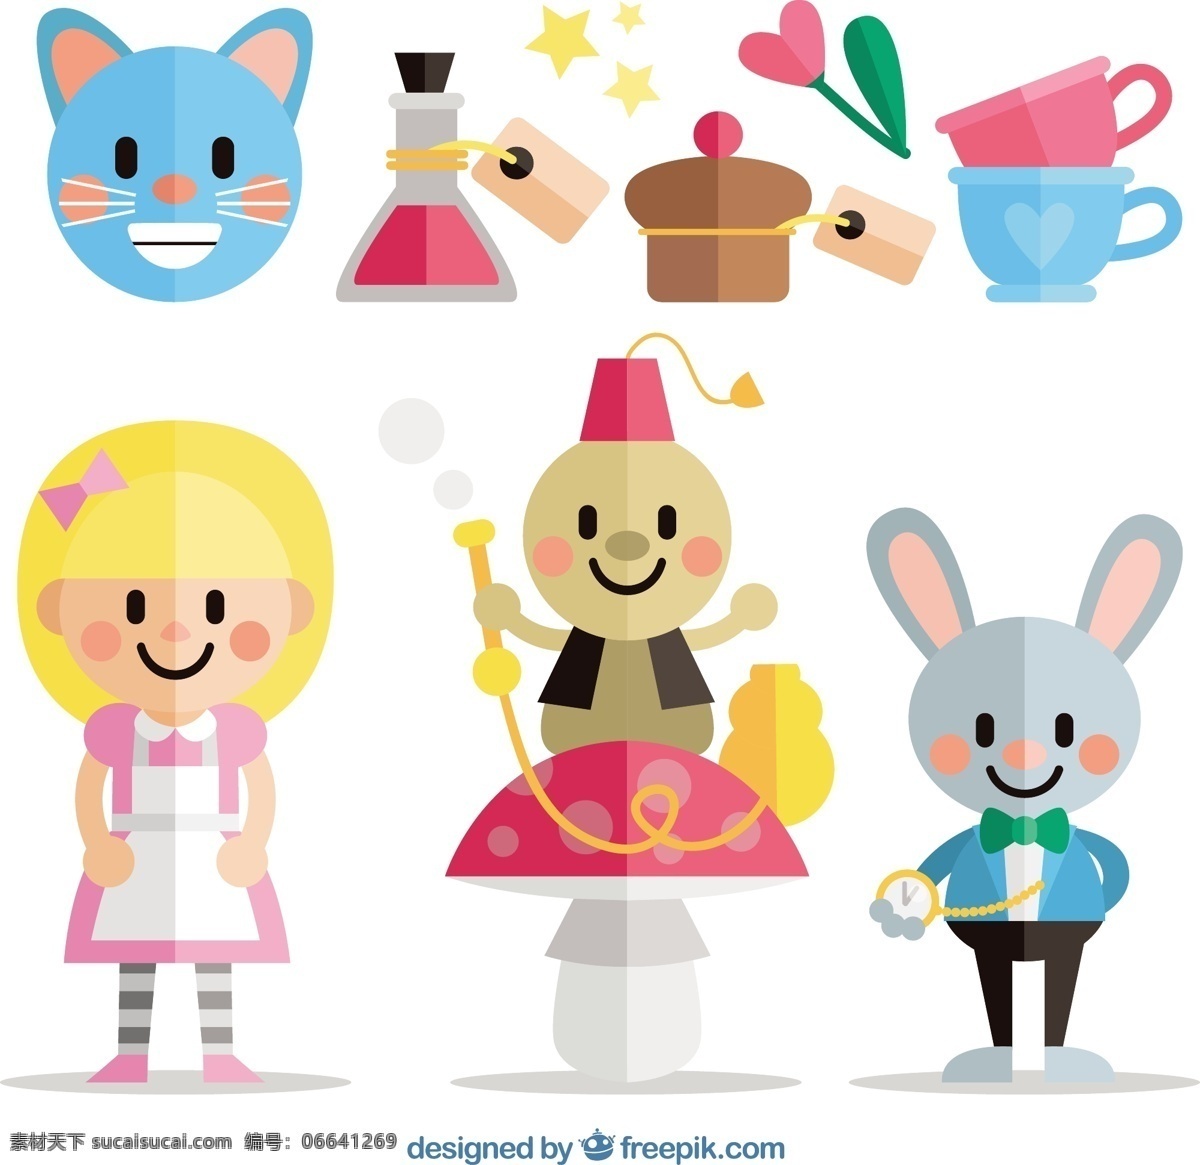 爱丽丝 梦游 仙境 角色 猫 可爱的蛋糕 孩子 平的 创造性的 兔子 梦想 平面设计 创意 童话 人物 故事 幻想 想象 可爱的女孩 可爱的